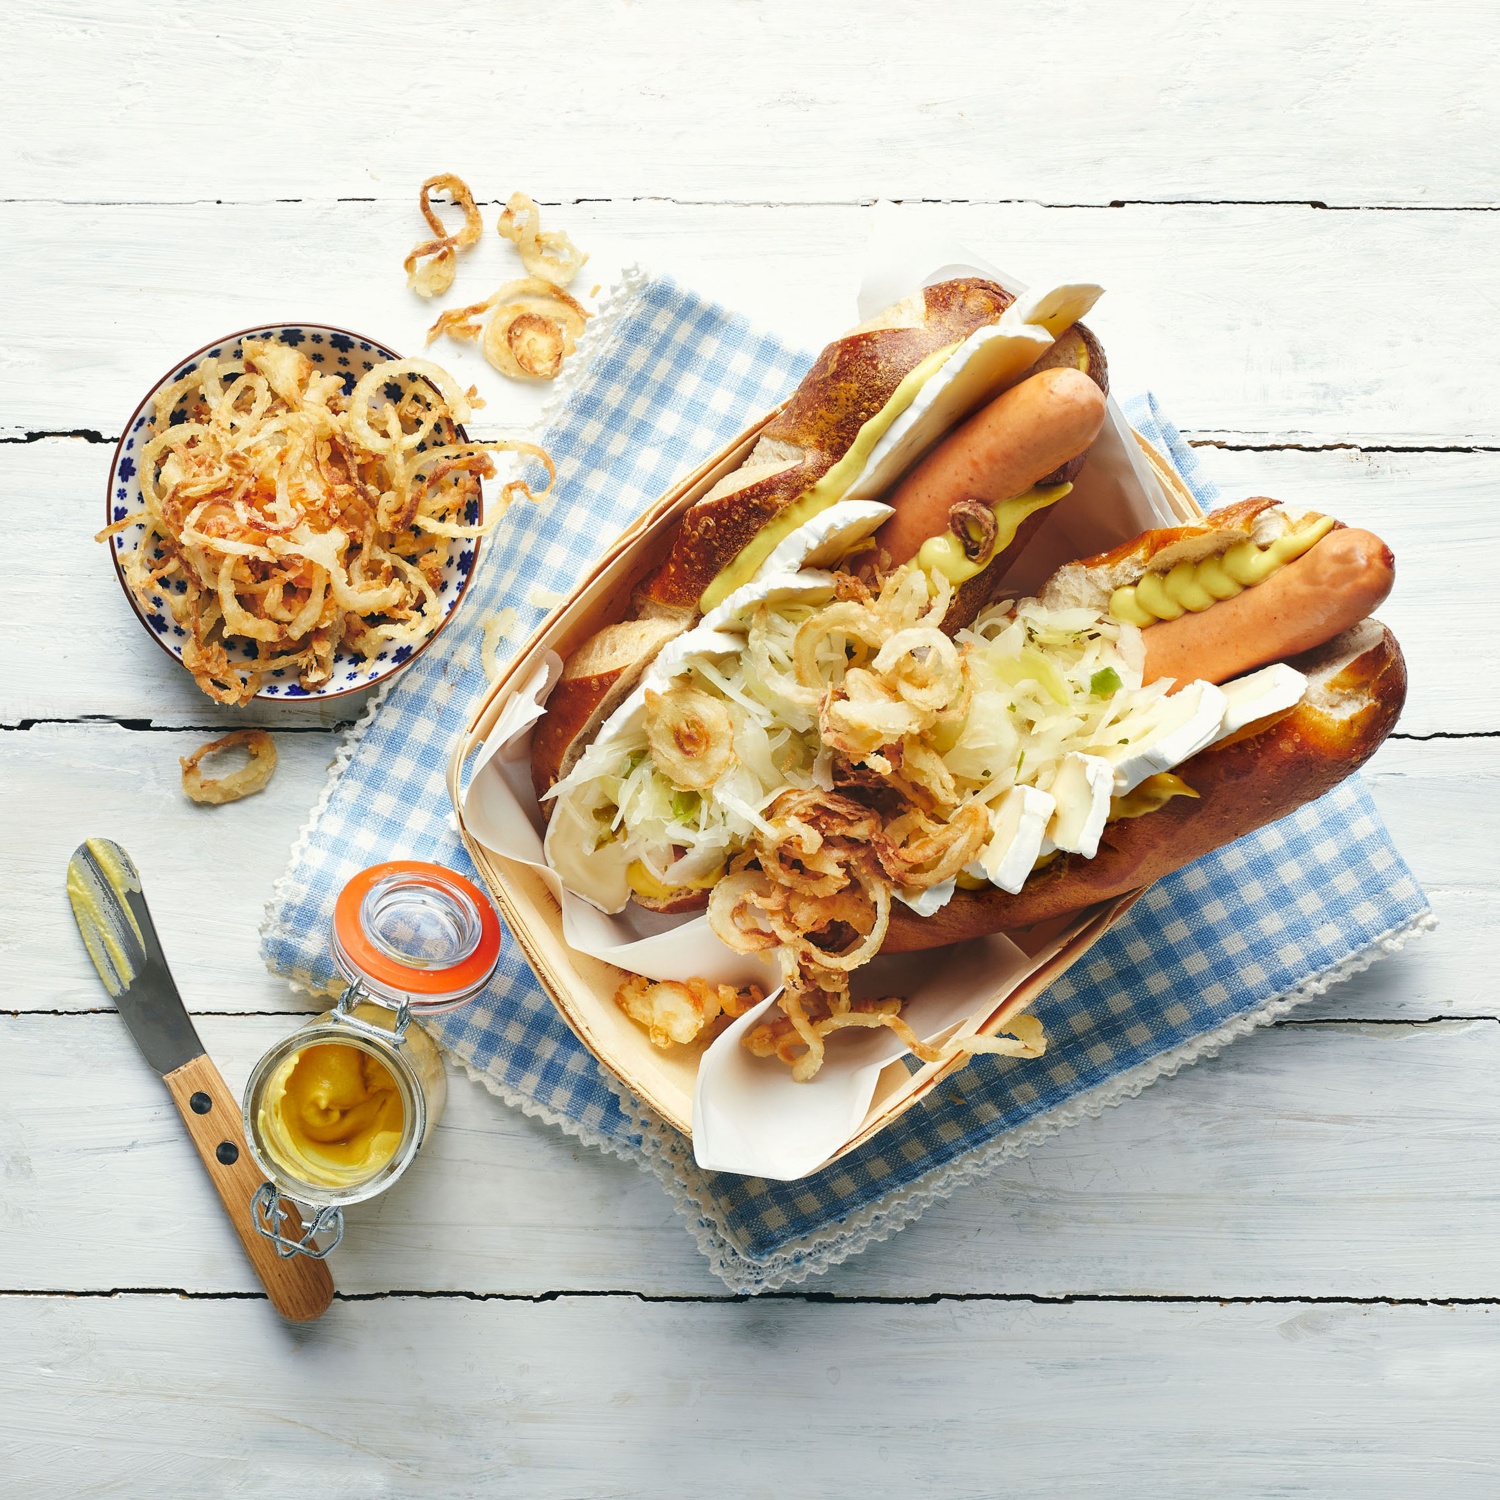 Bayerischer Hot Dog mit Camembert, Weißkohl und Zwiebeln